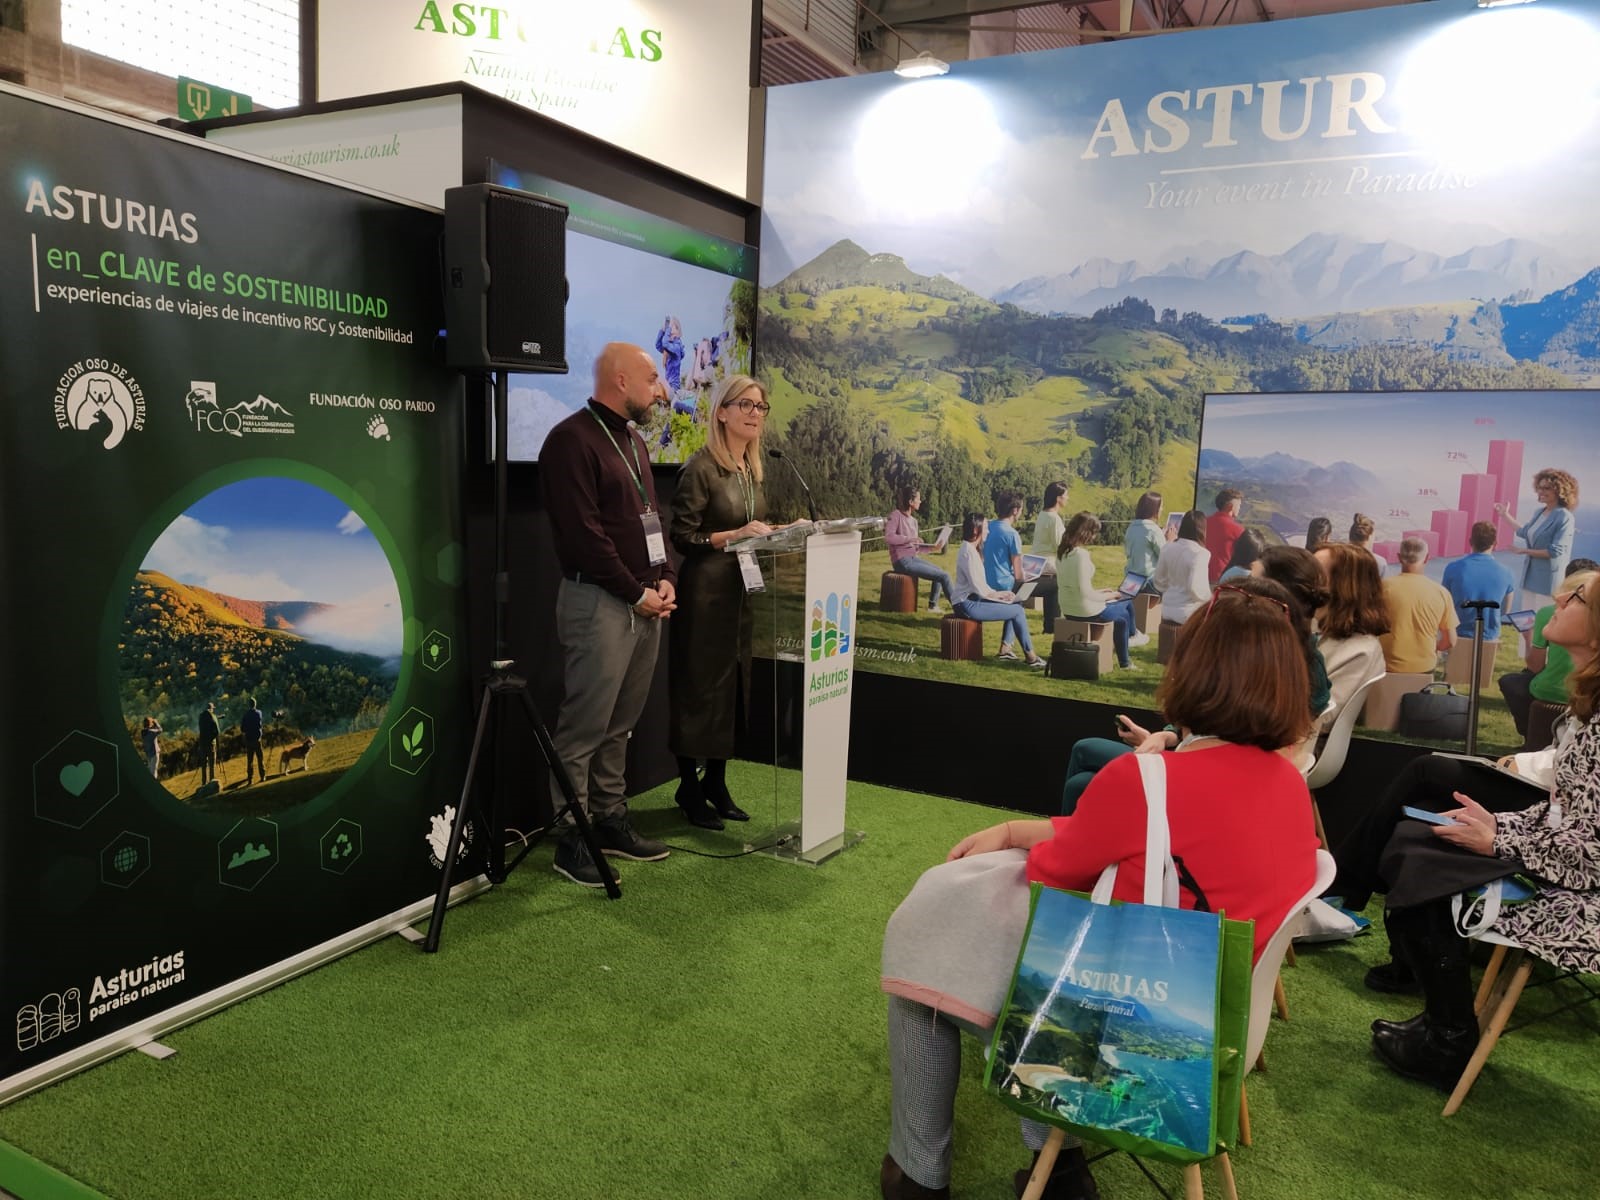 Imagen - Asturias se posiciona como destino sostenible para congresos en la feria internacional IBTM World de Barcelona